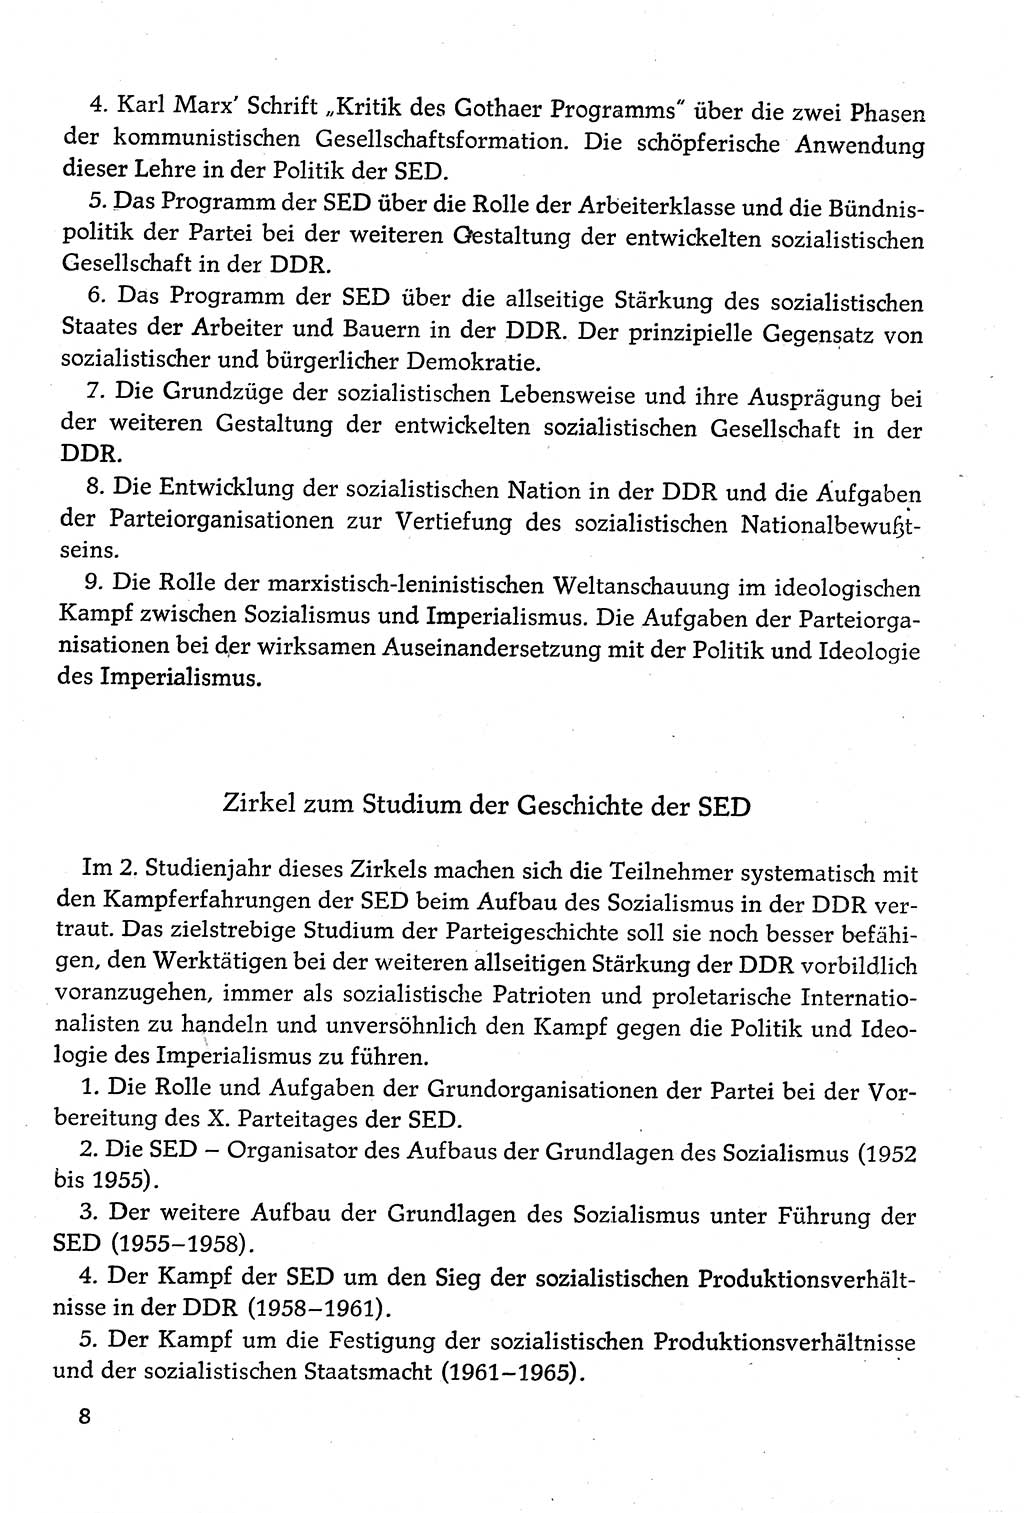 Dokumente der Sozialistischen Einheitspartei Deutschlands (SED) [Deutsche Demokratische Republik (DDR)] 1980-1981, Seite 8 (Dok. SED DDR 1980-1981, S. 8)